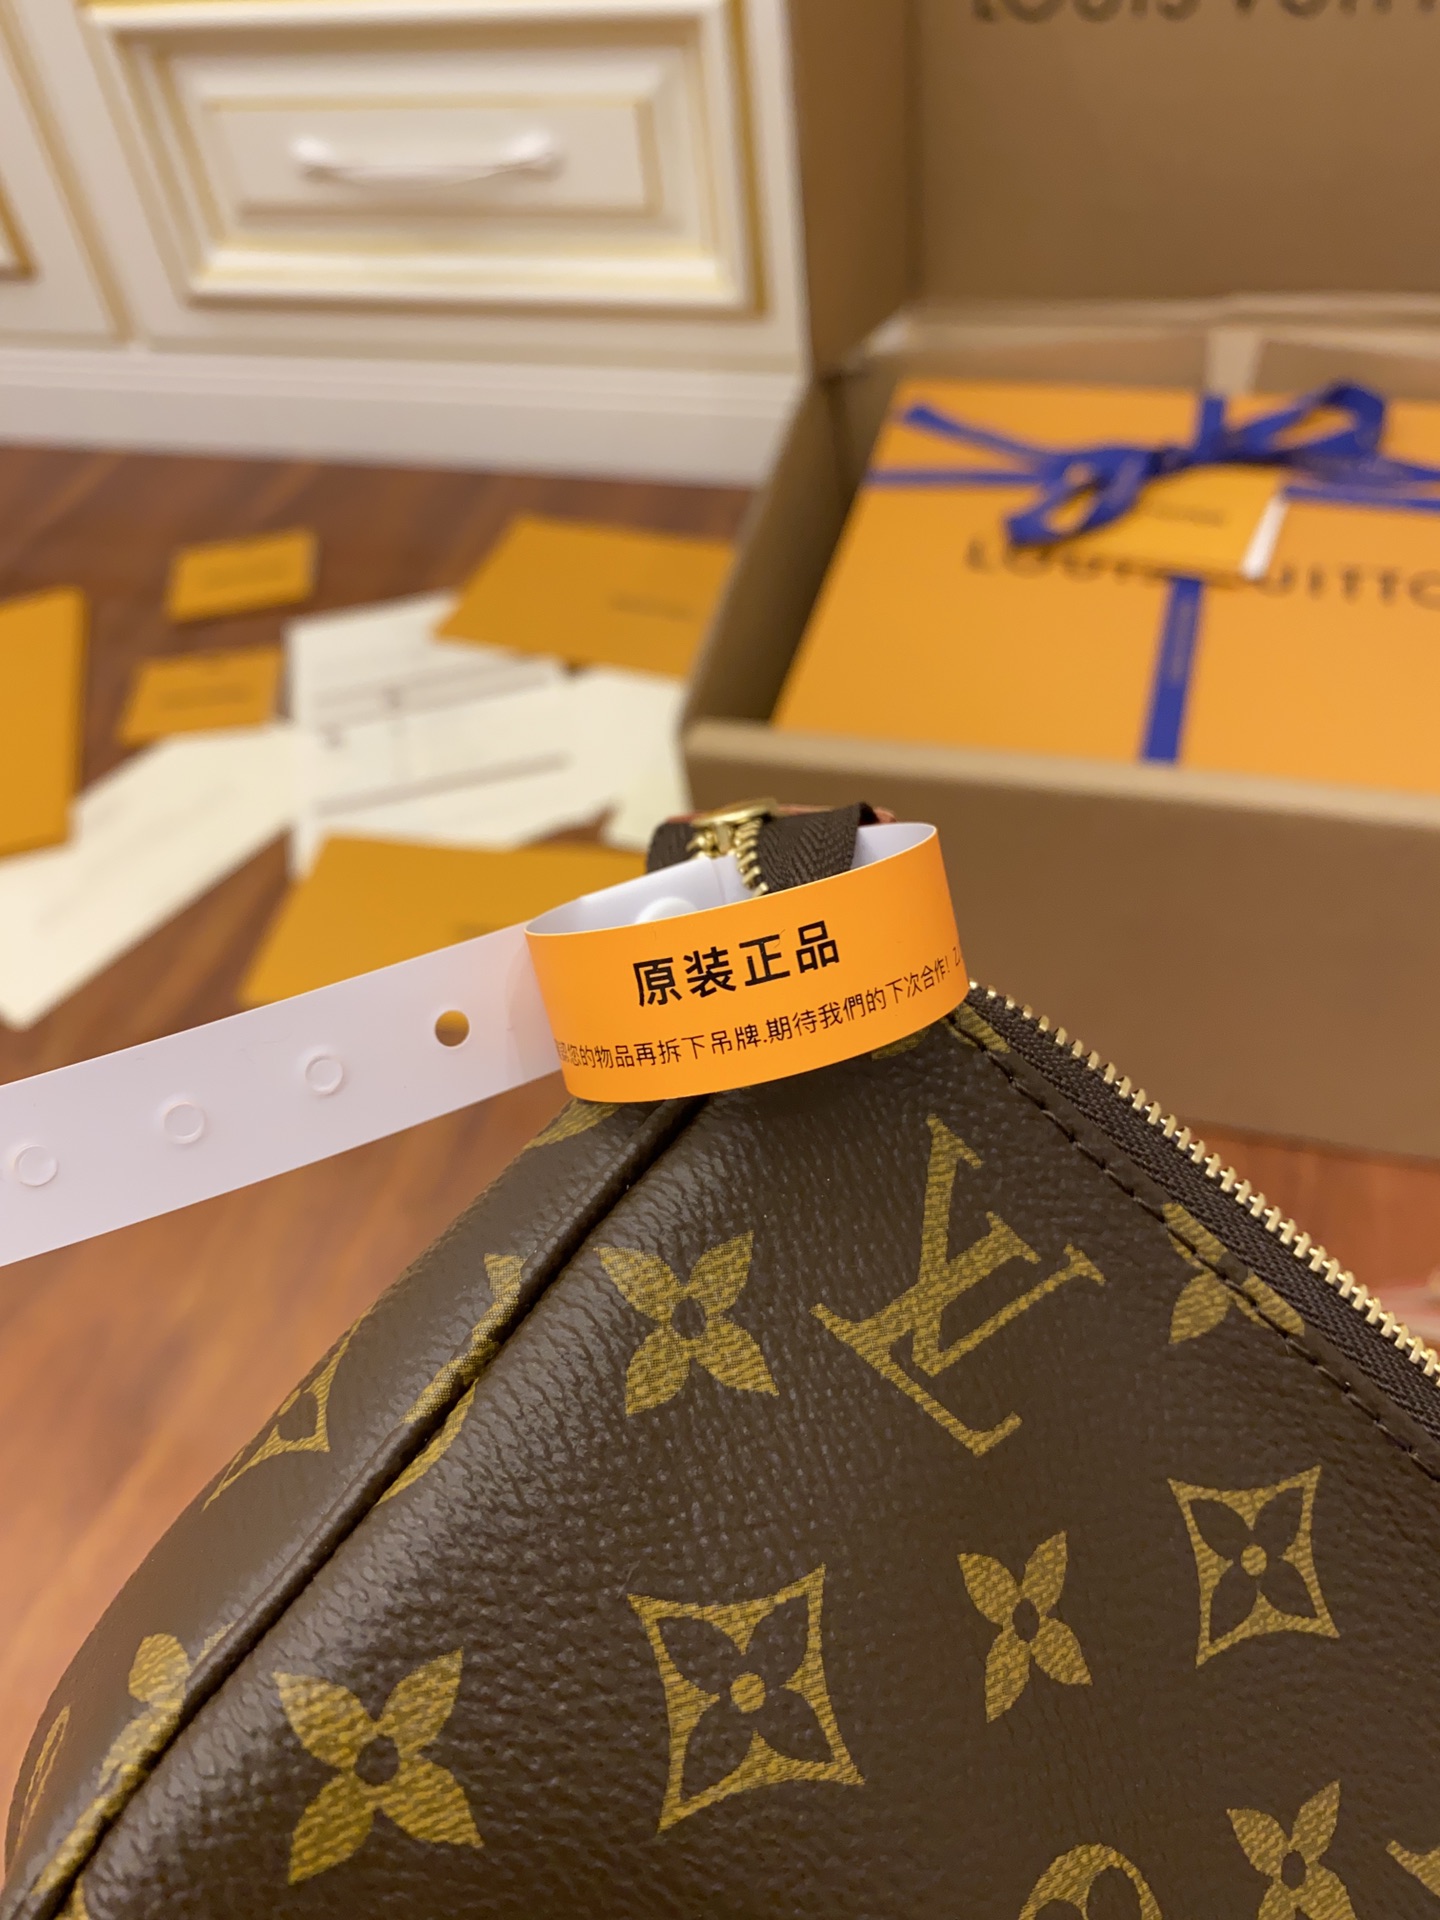 Louis Vuitton LV Pochette Accessoires配饰麻将包M40712